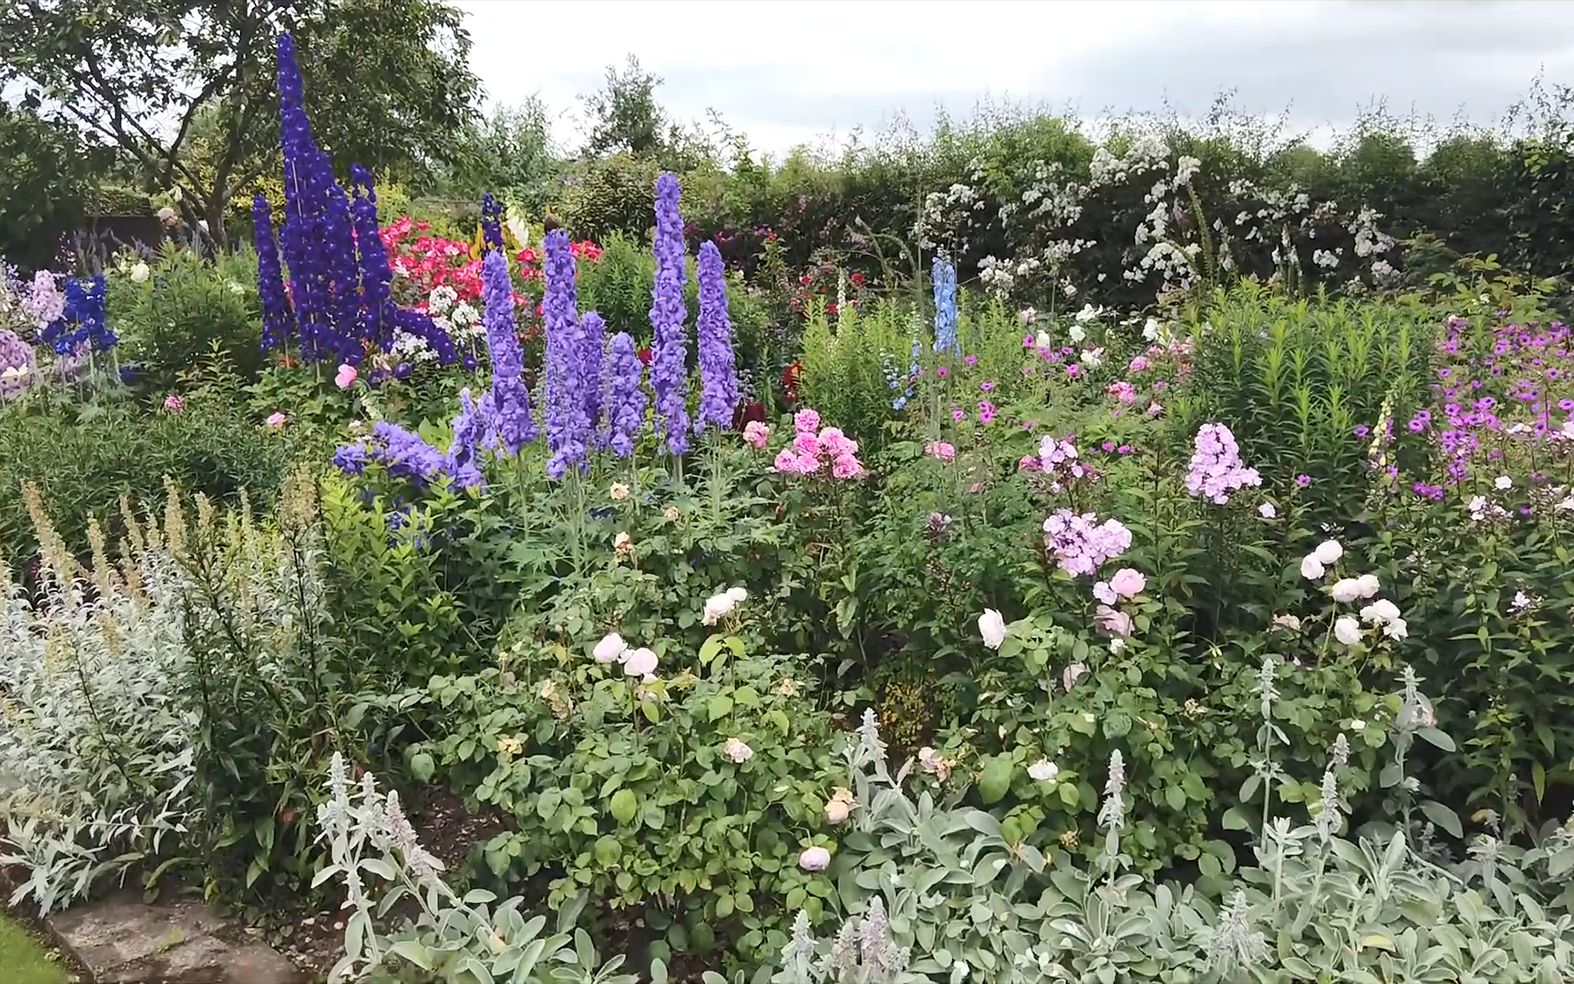 Gardens of Britain丨大花飞燕草、月季、各种宿根花卉的高光时刻丨Wollerton Old Hall Garden